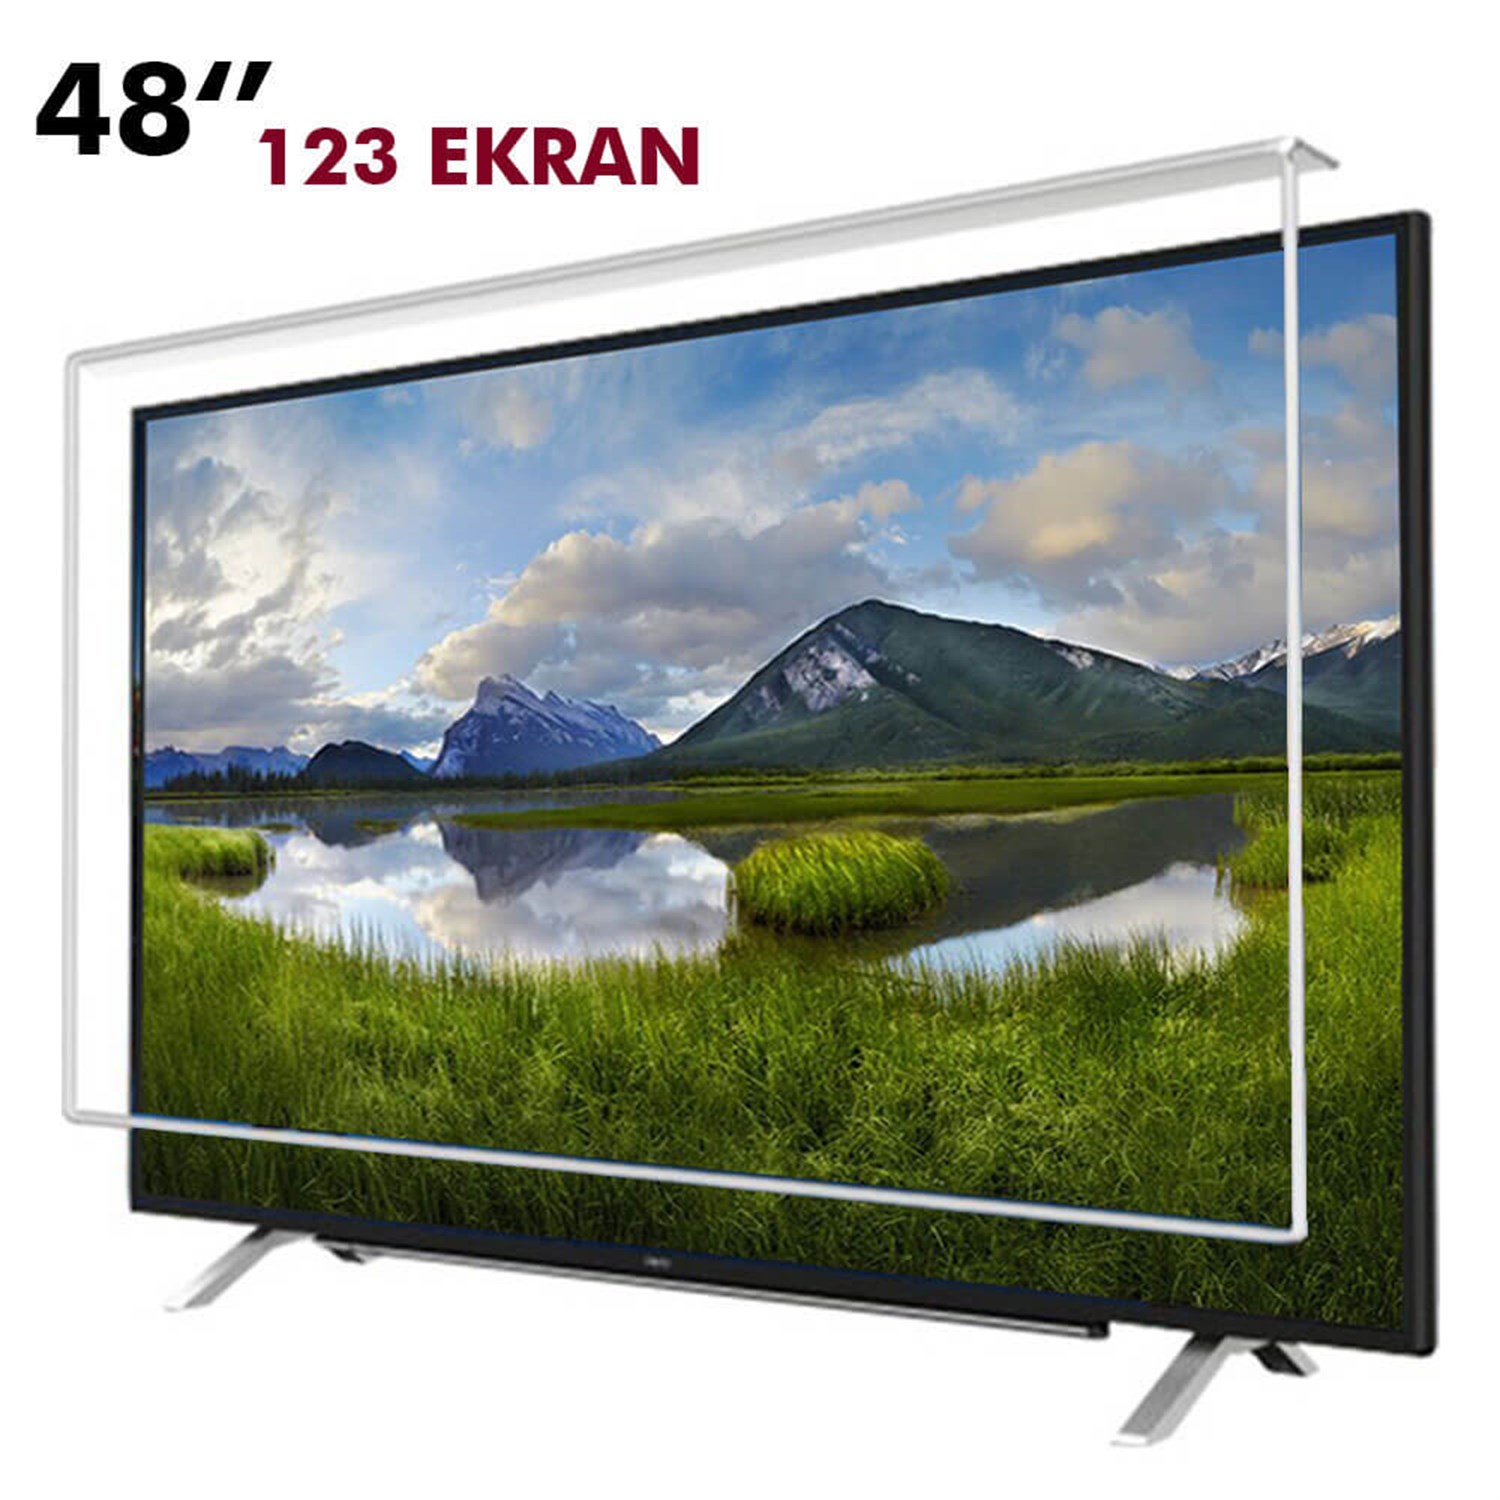 Tv Ekran Koruyucu 123 Ekran(48” inch) | Okularenkkat.com